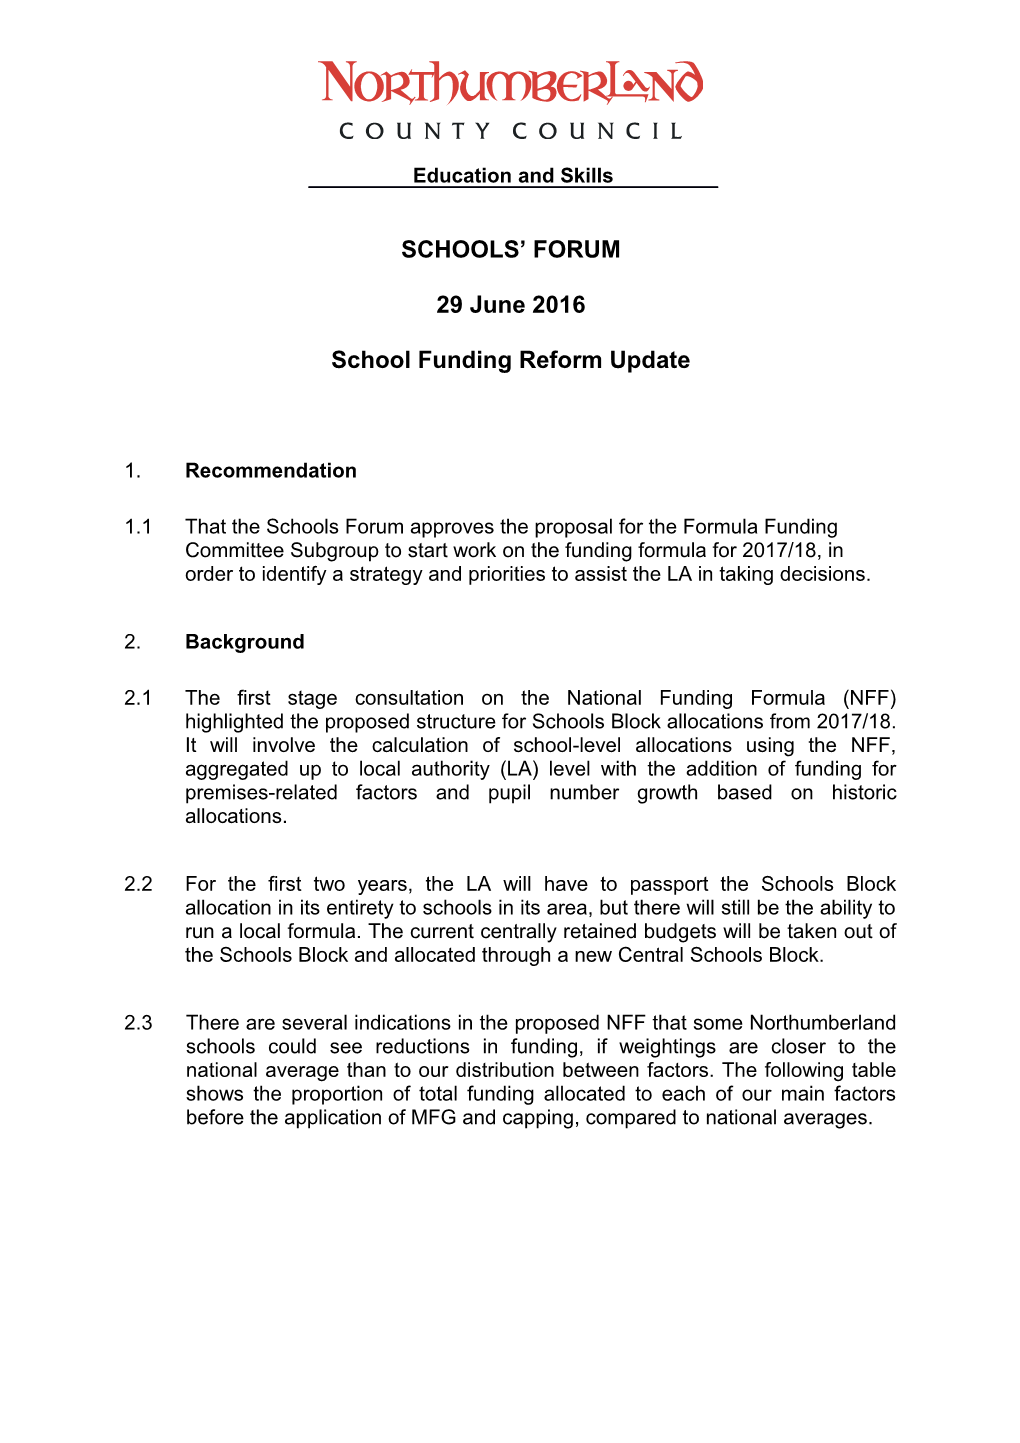 School Funding Reform Update